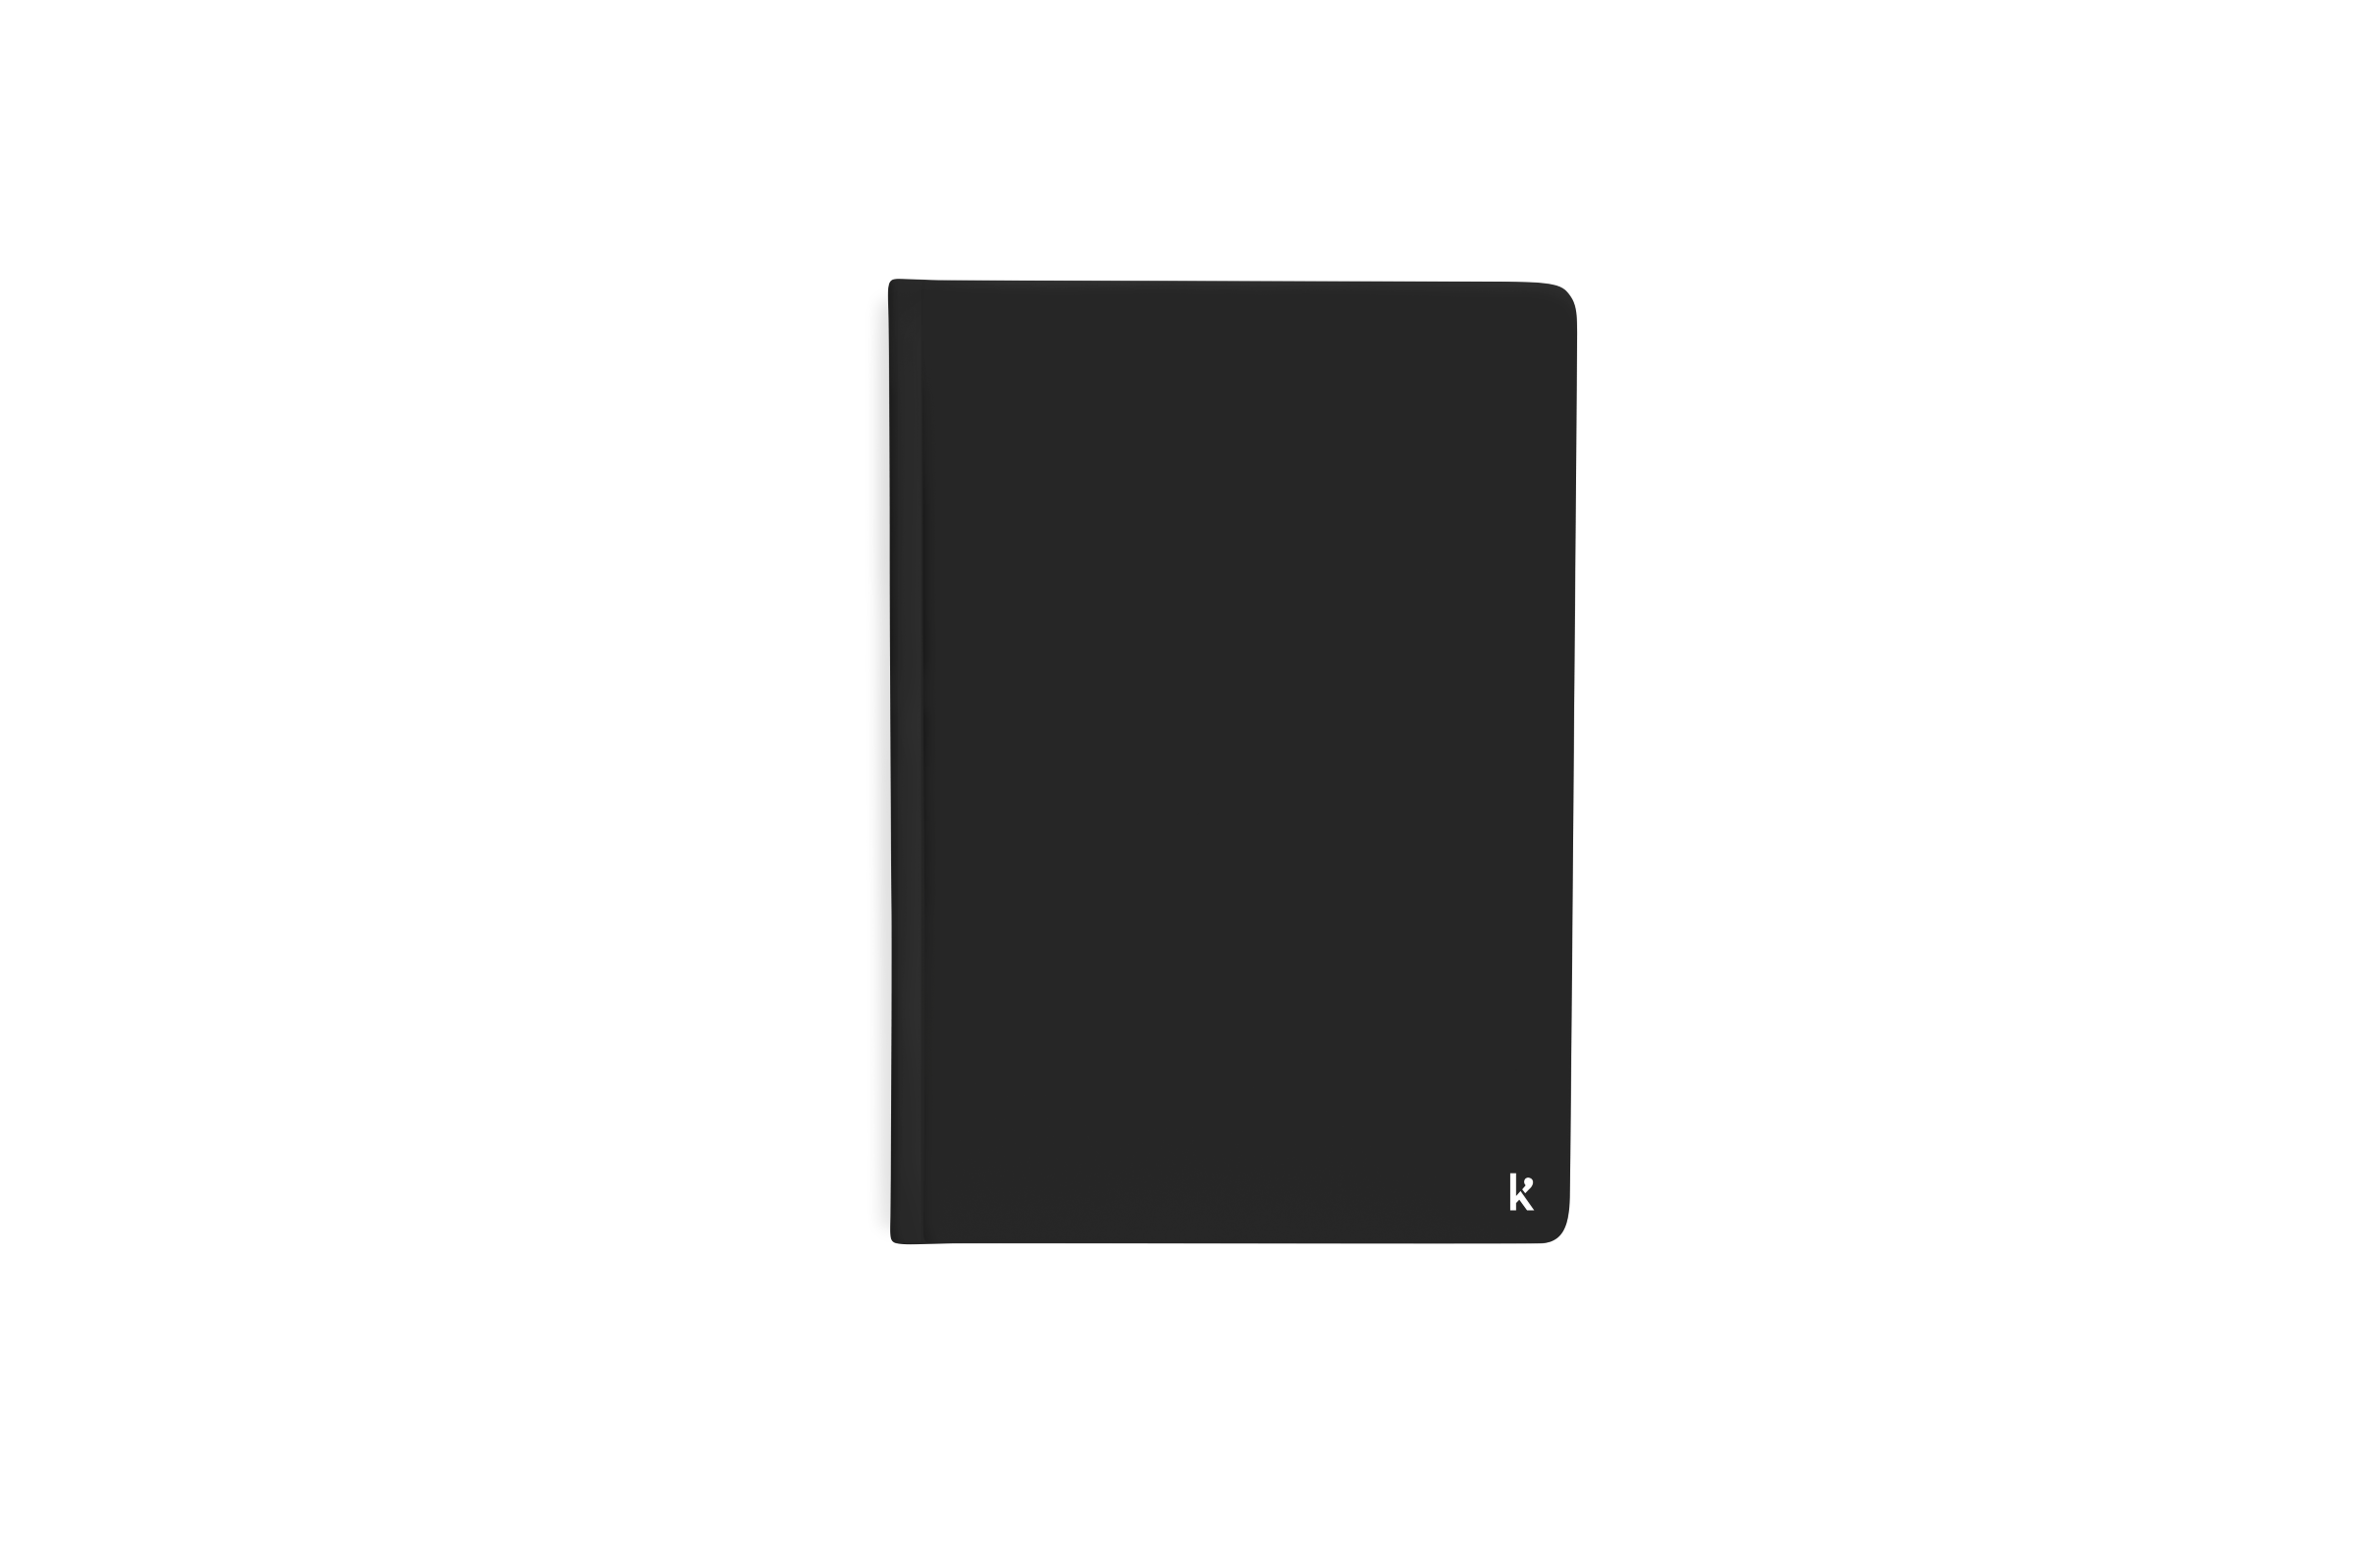 Karst A5 Hardcover Notebook Black